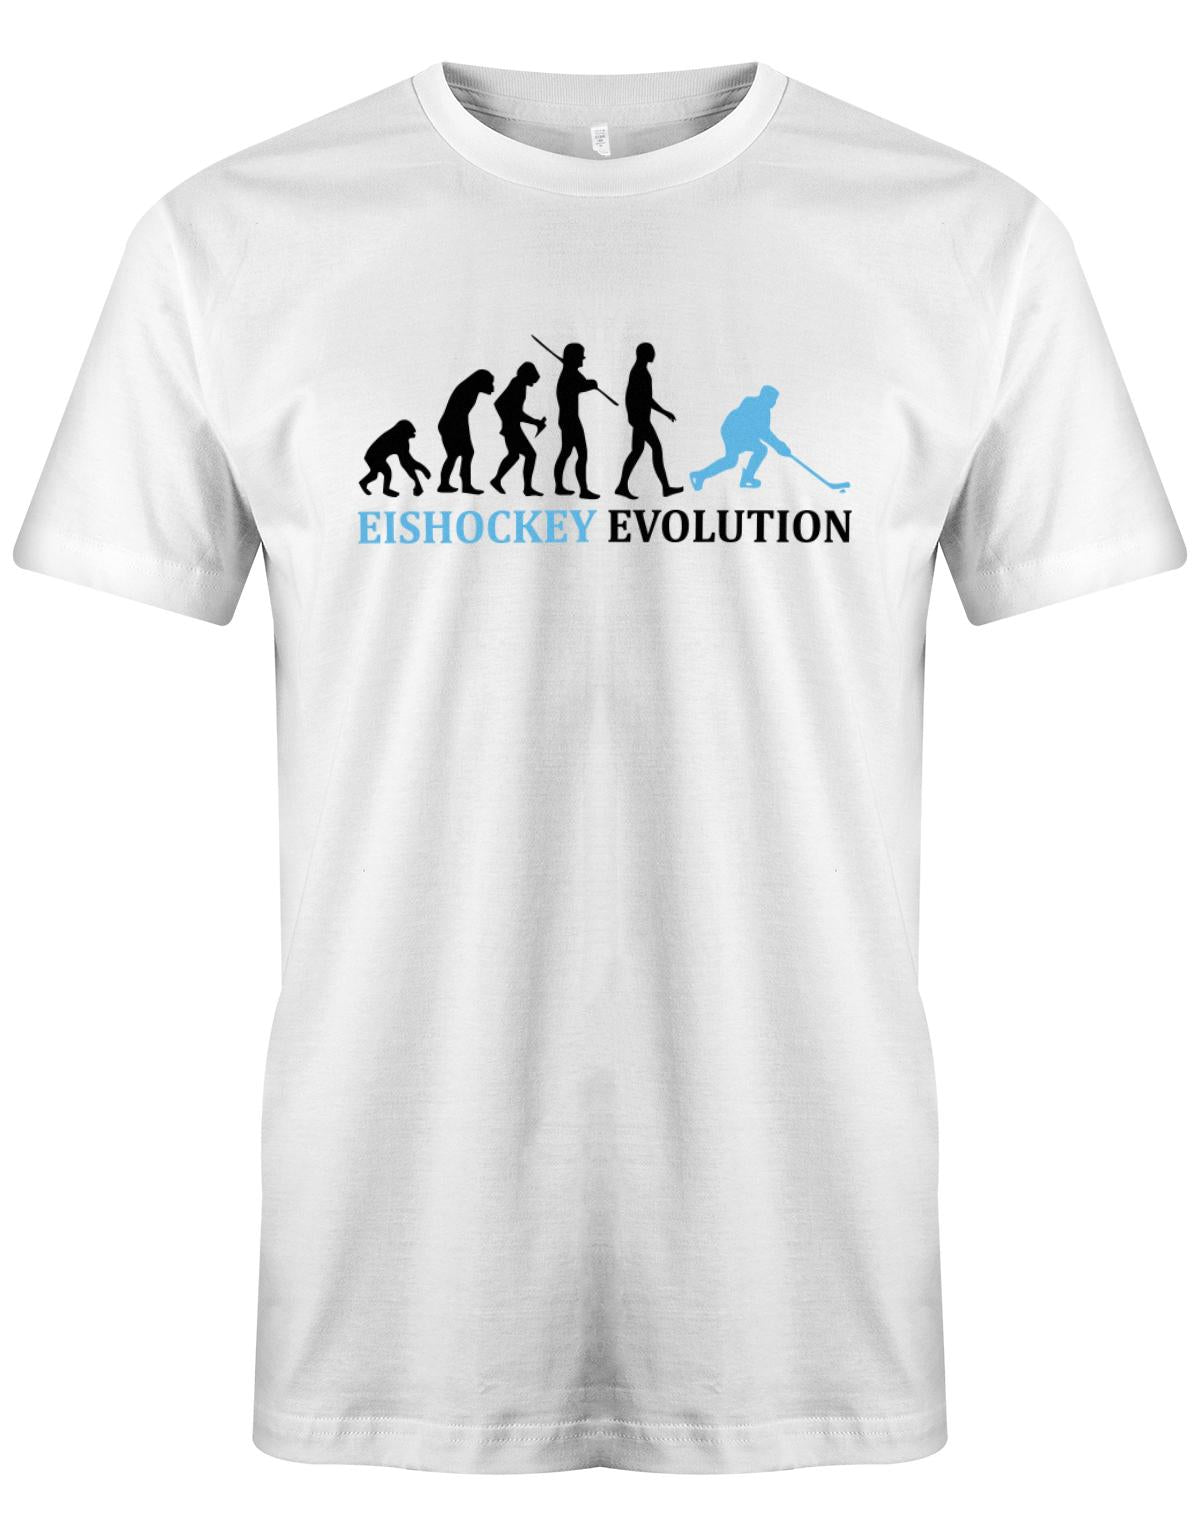 Eishockey-Evolution-Herren-Shirt-Weiss